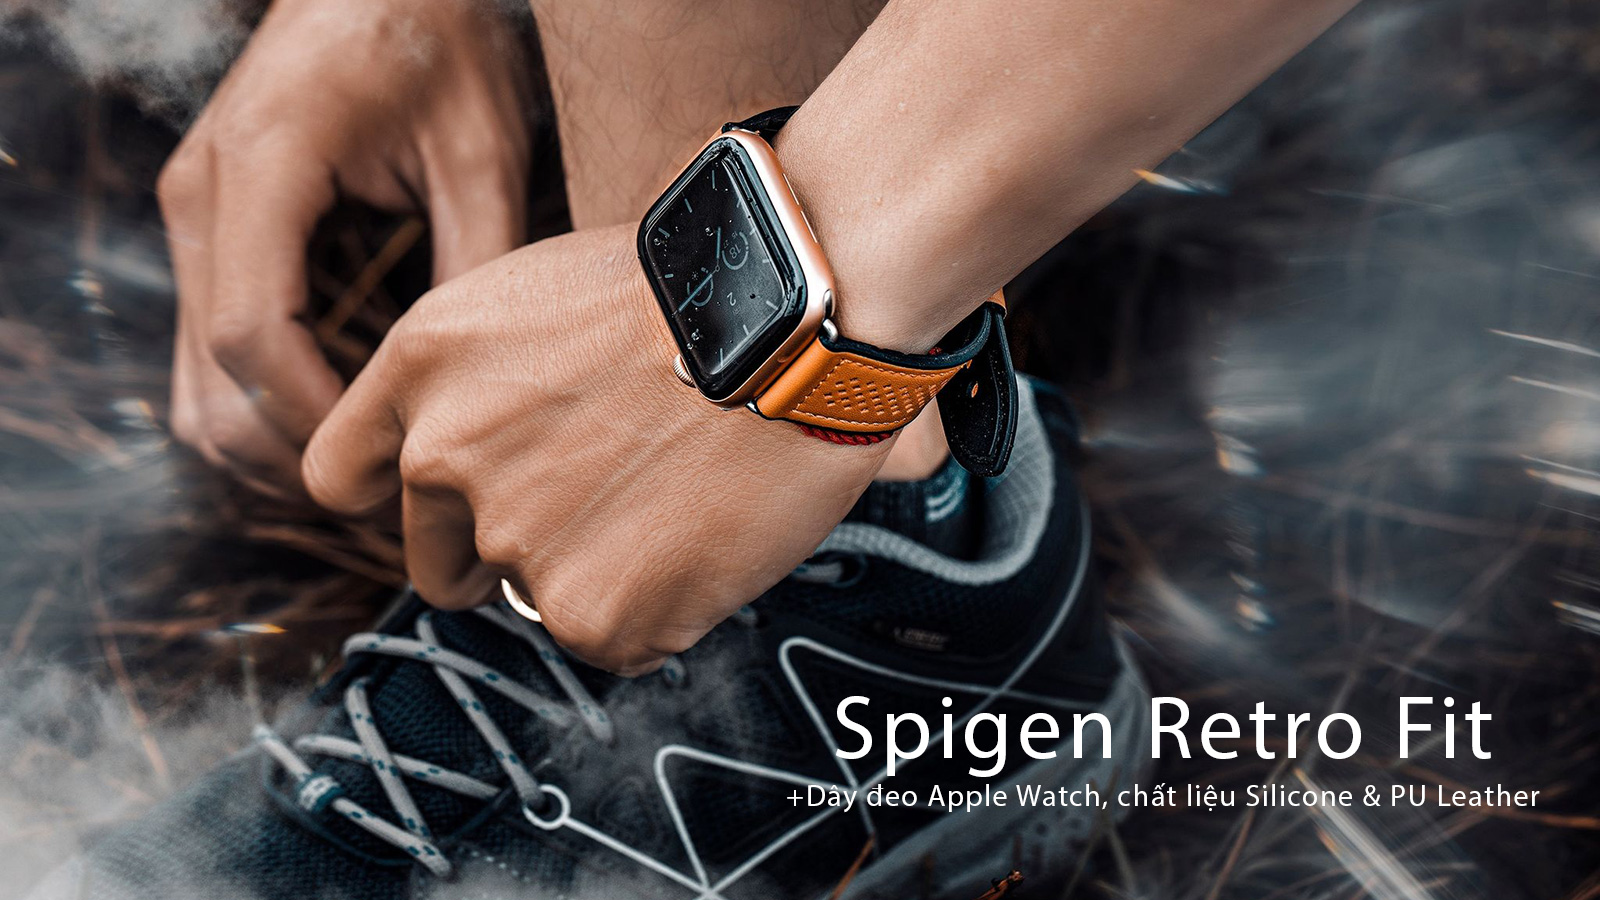 Dây đeo Apple Watch Spigen Retro Fit